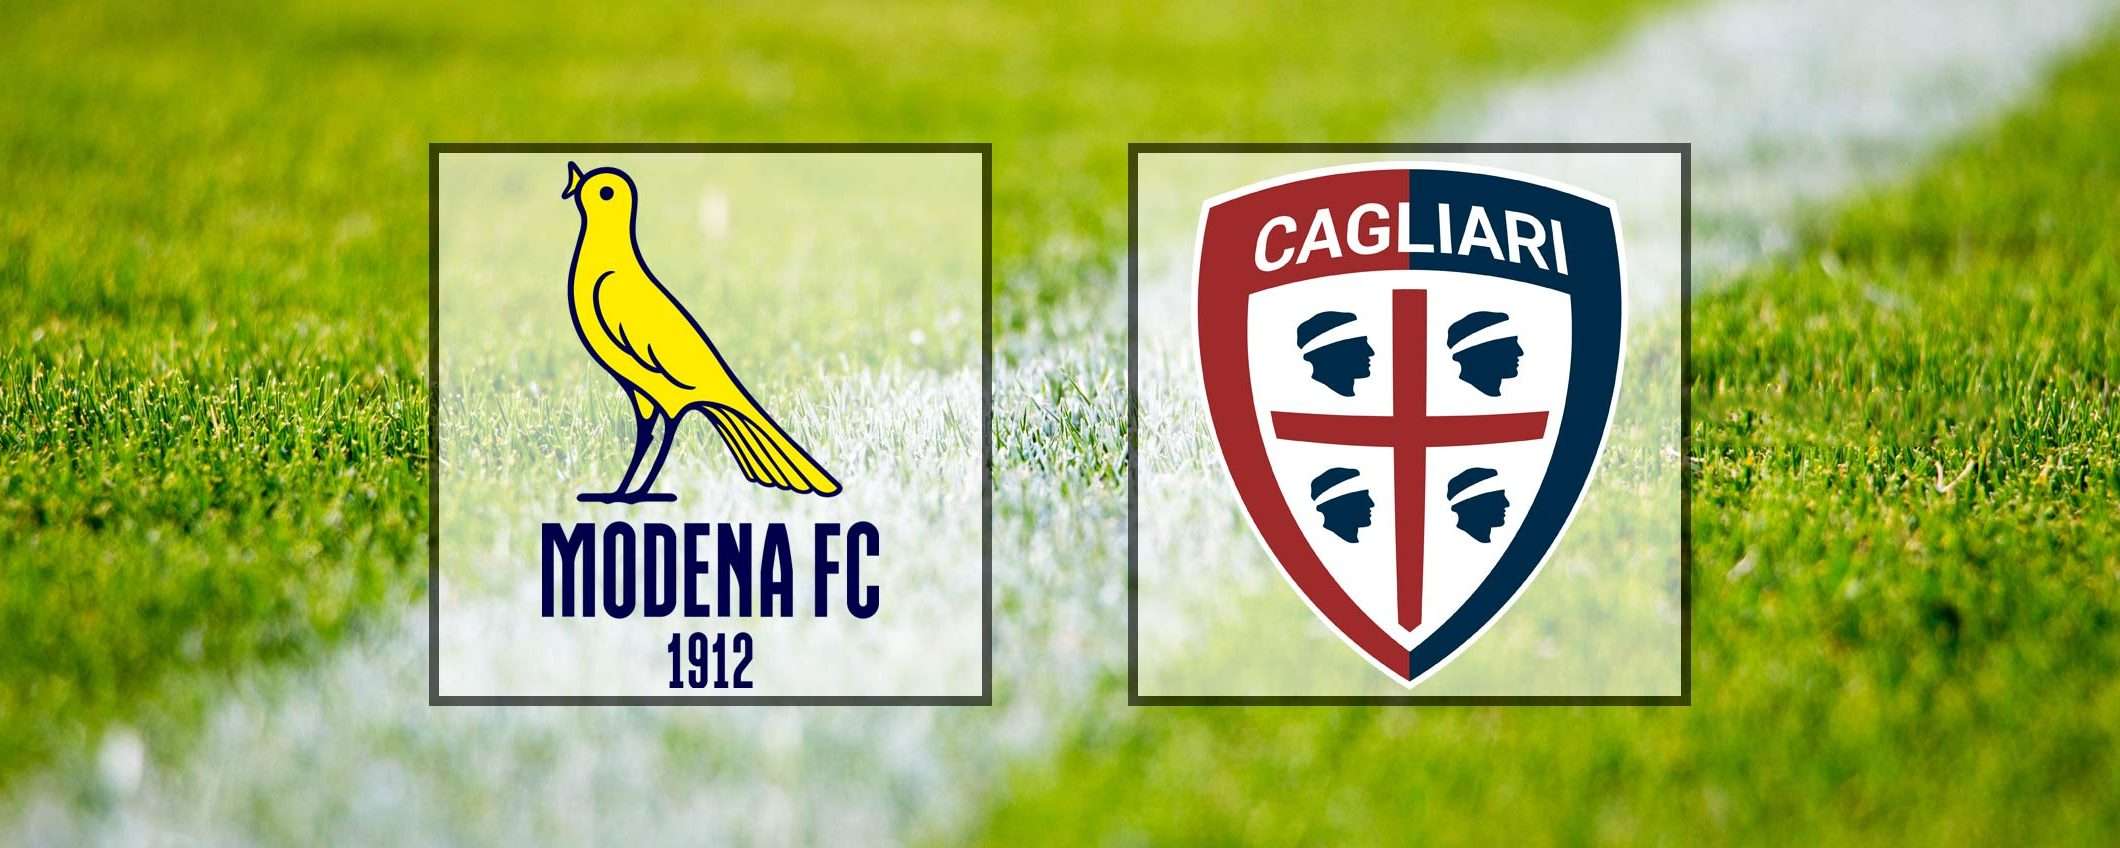 Come vedere Modena-Cagliari in streaming